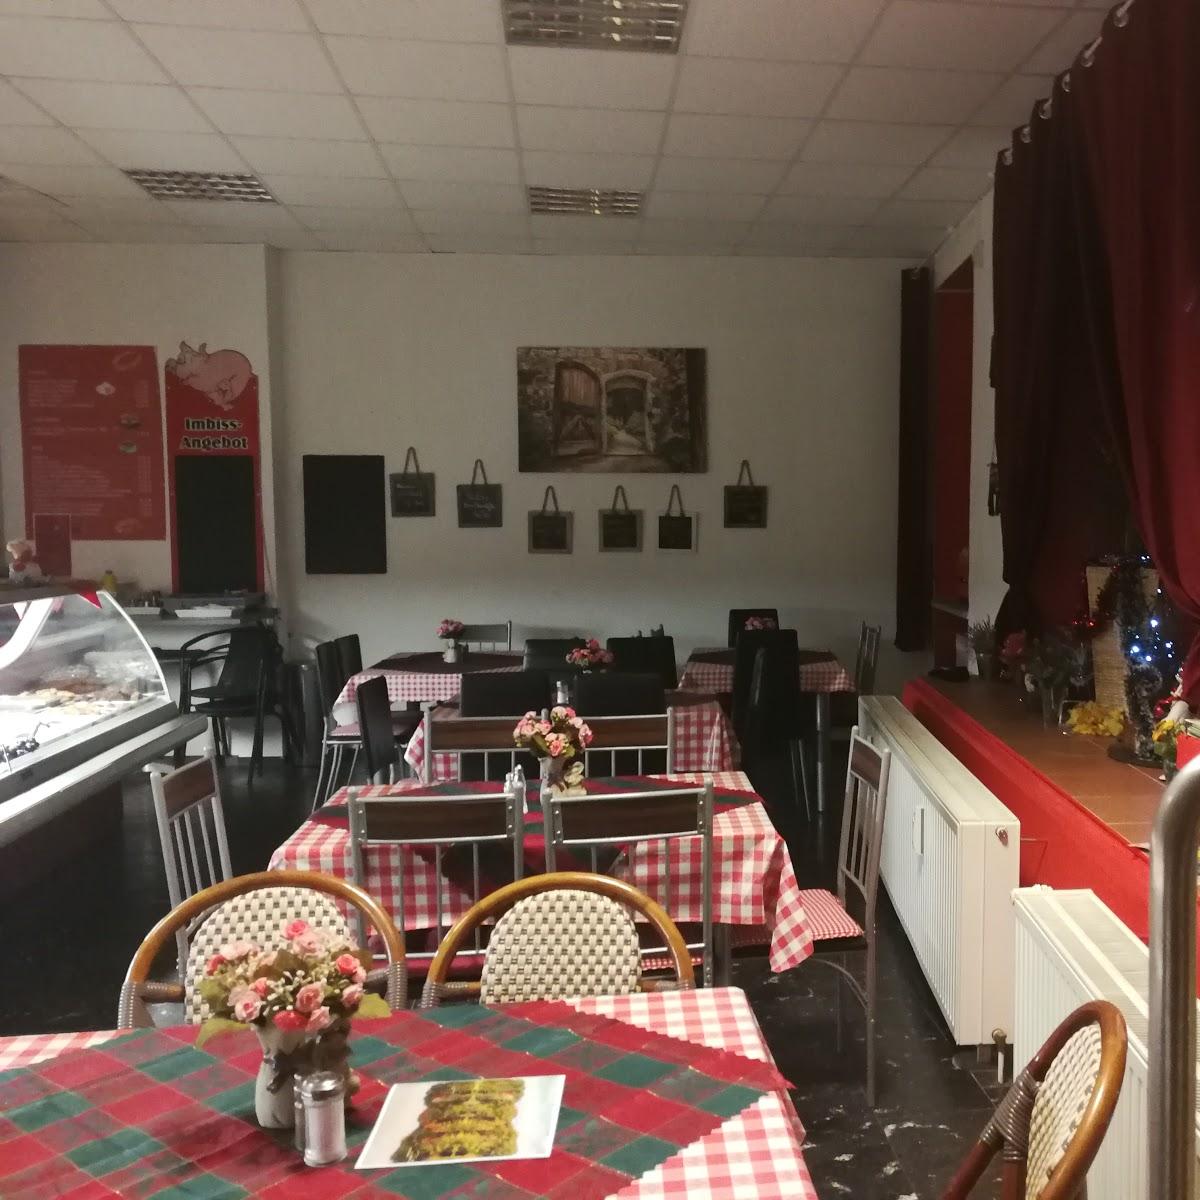 Restaurant "Fleisch- und Wurstwaren mit Imbiss" in Nauen